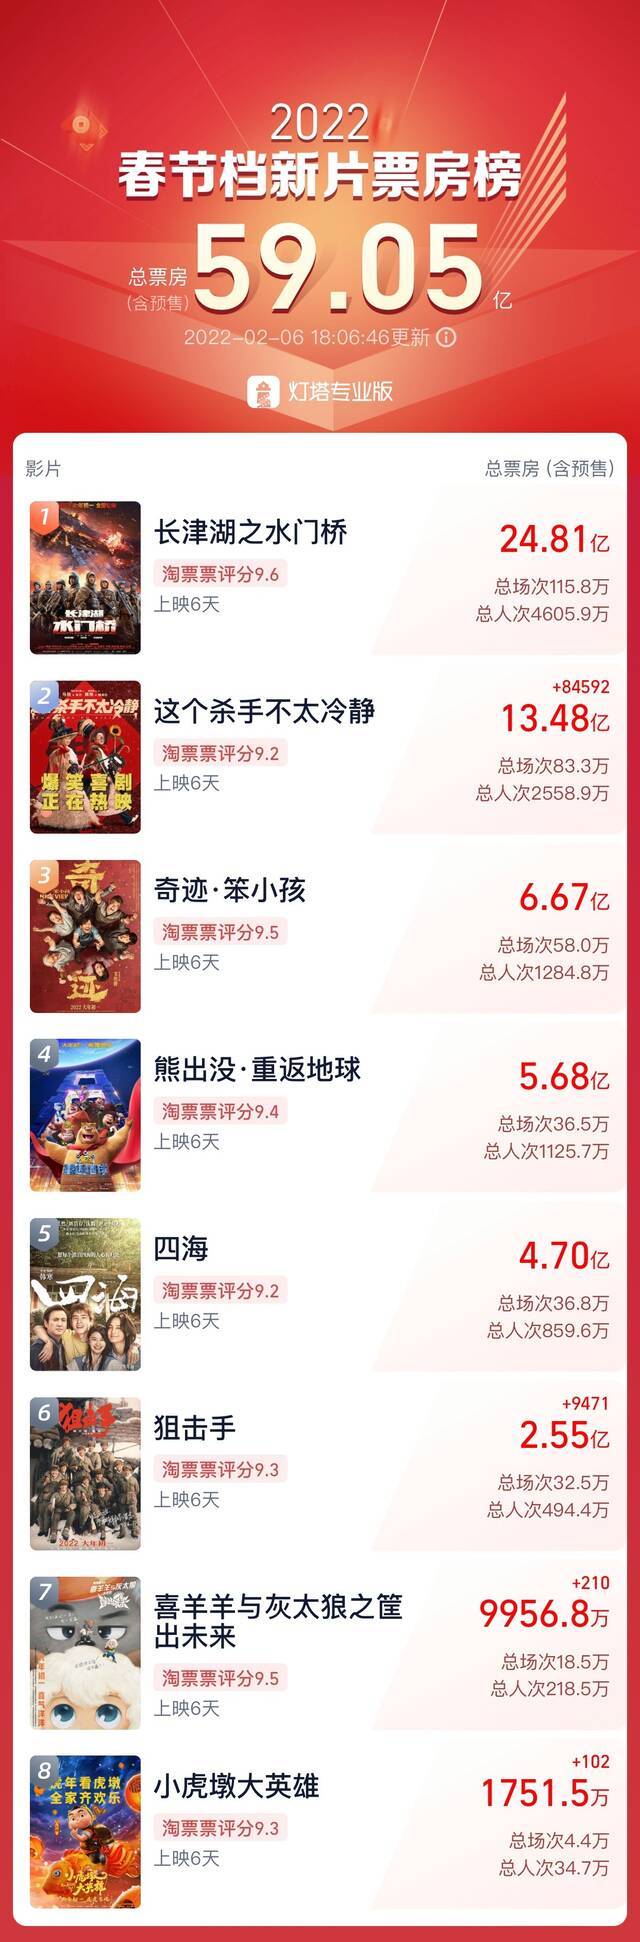 虎年中国电影春节档票房已超59亿元